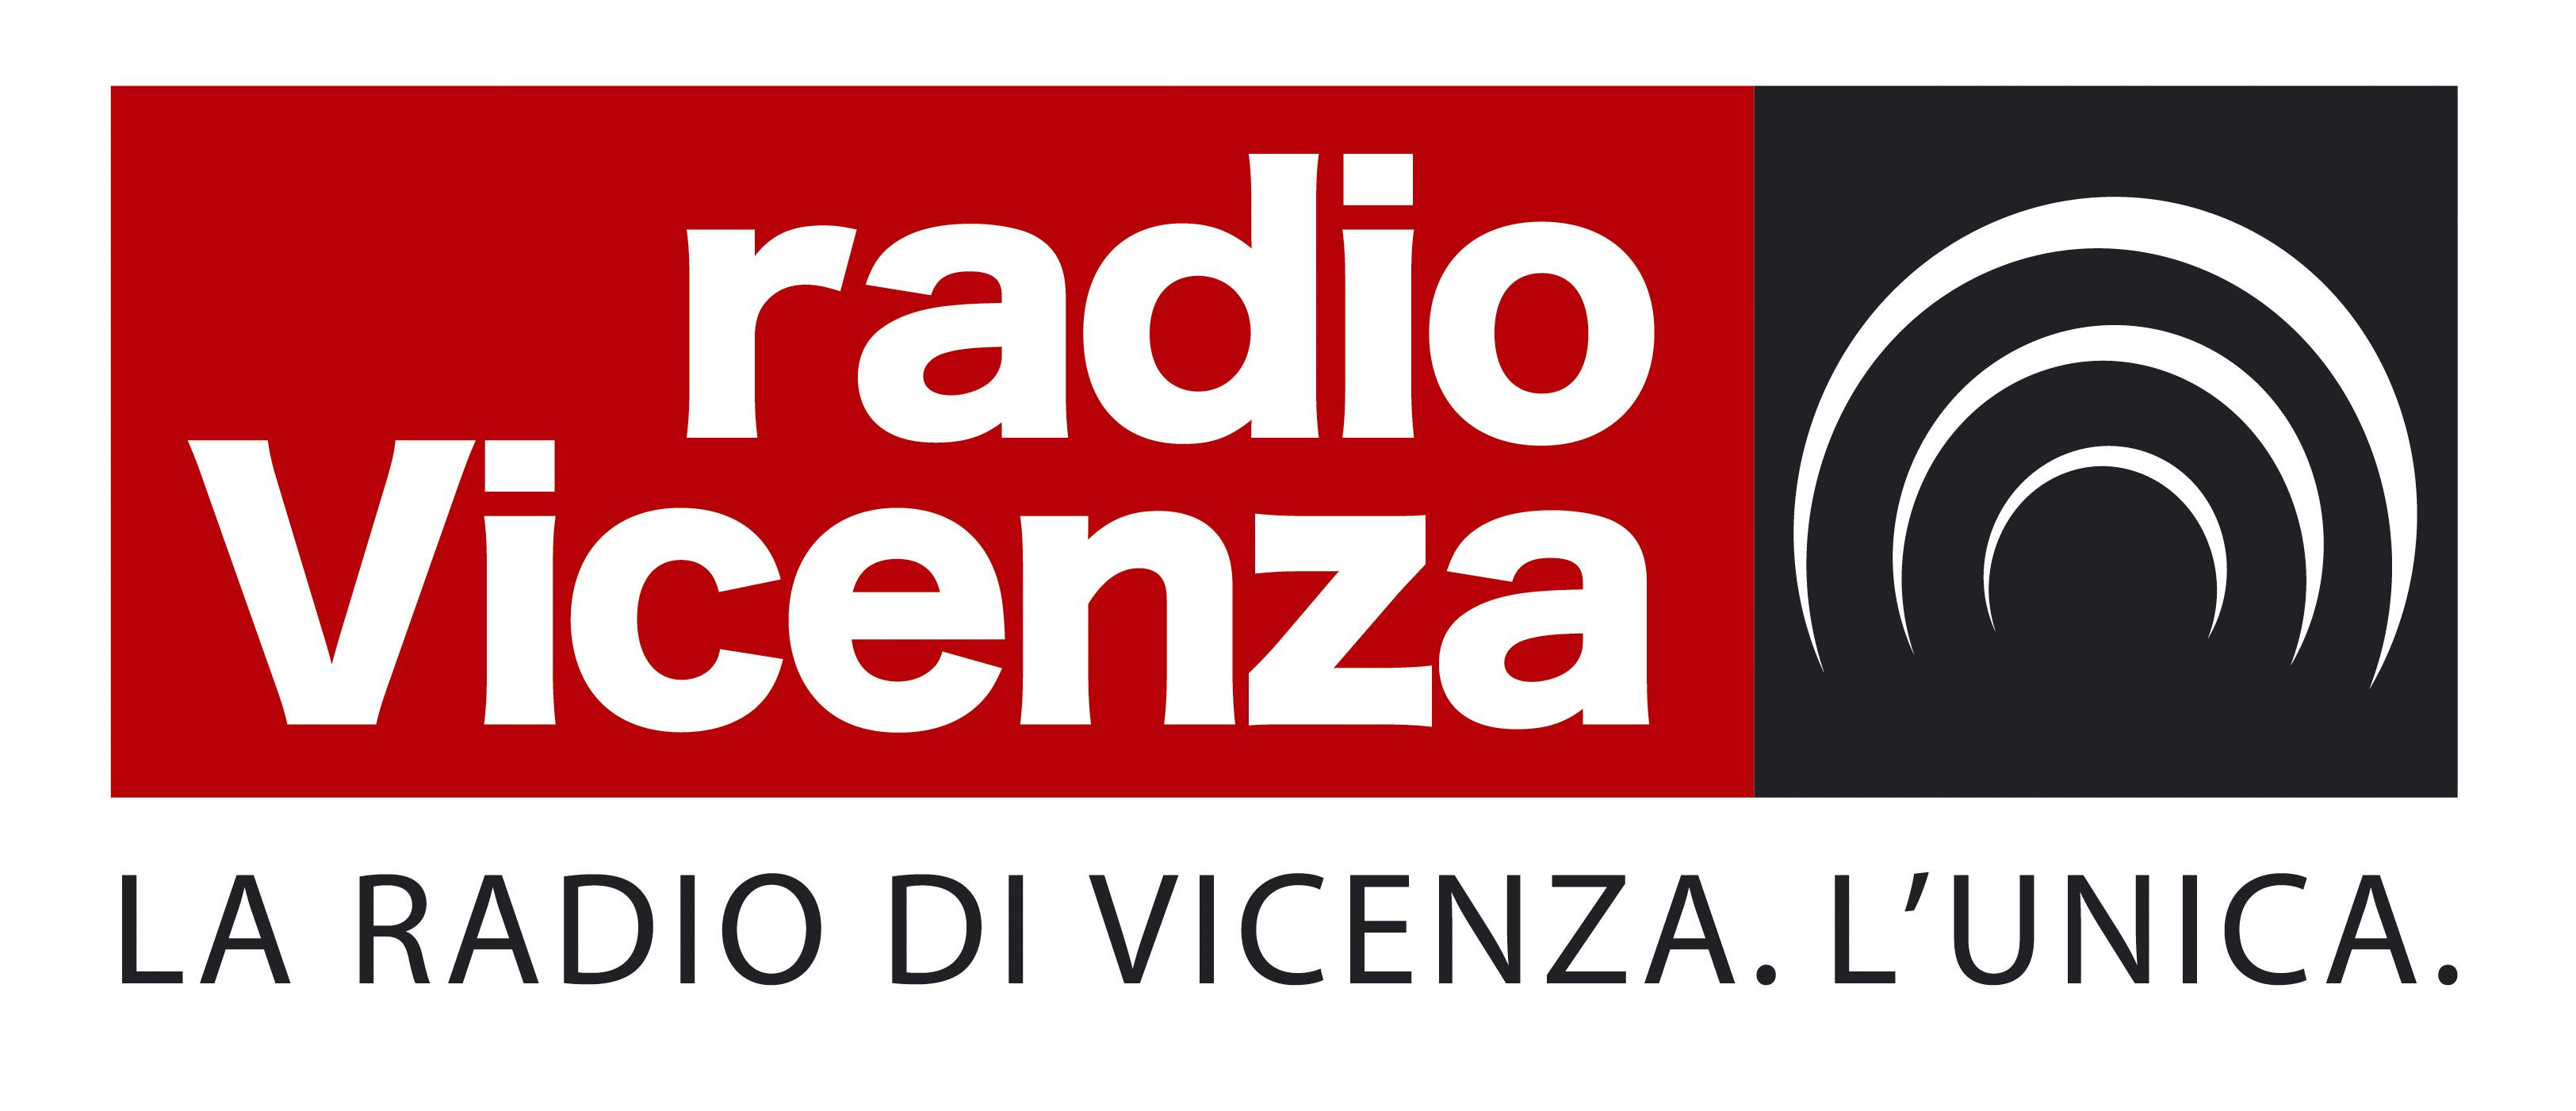 Biancorossi.net su Radio Vicenza posticipata alle 19